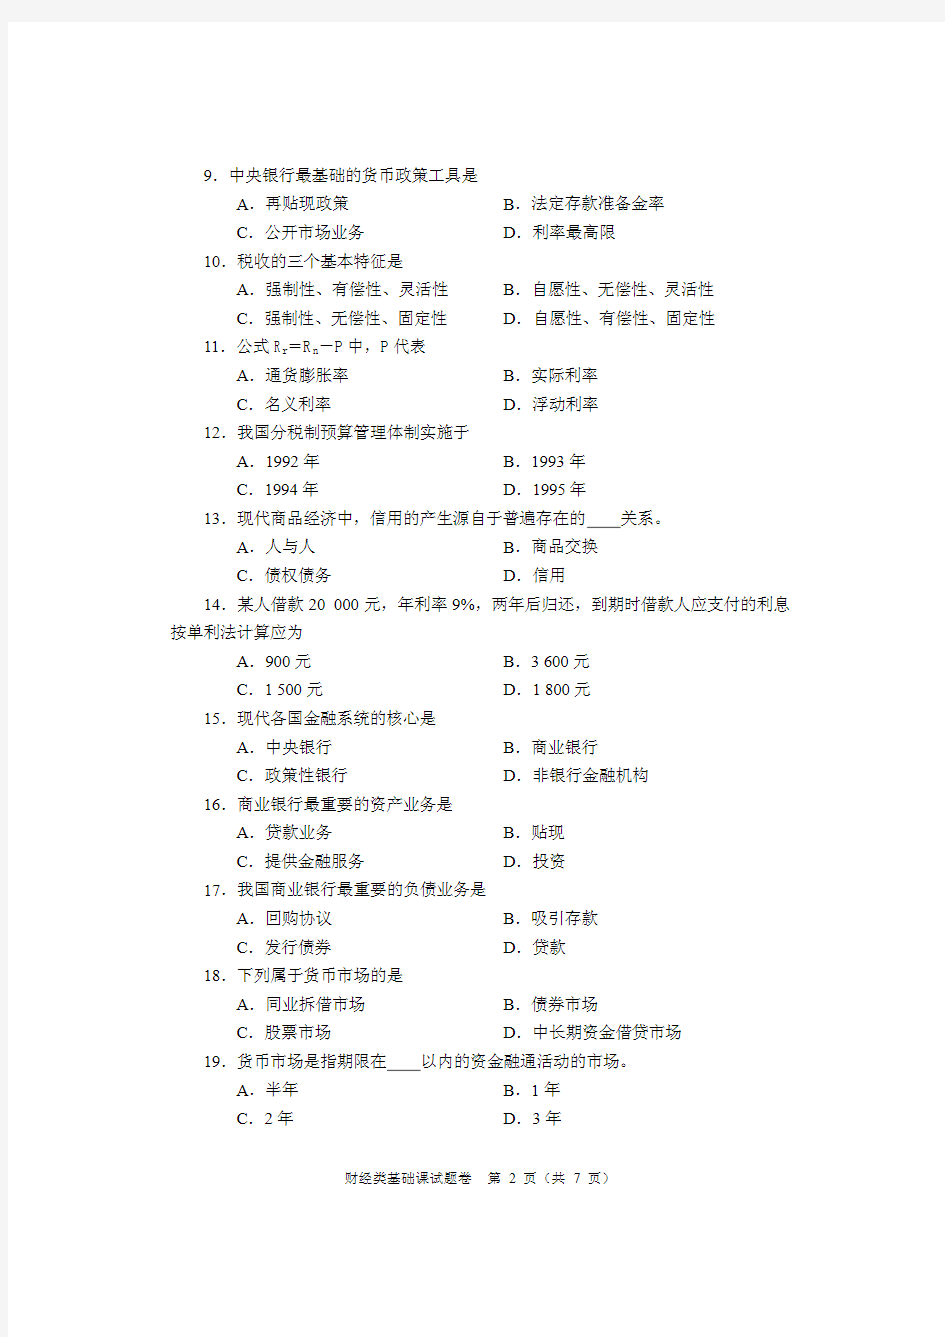 2015年河南省普通高等学校对口招收中等职业学校毕业生财经类试卷